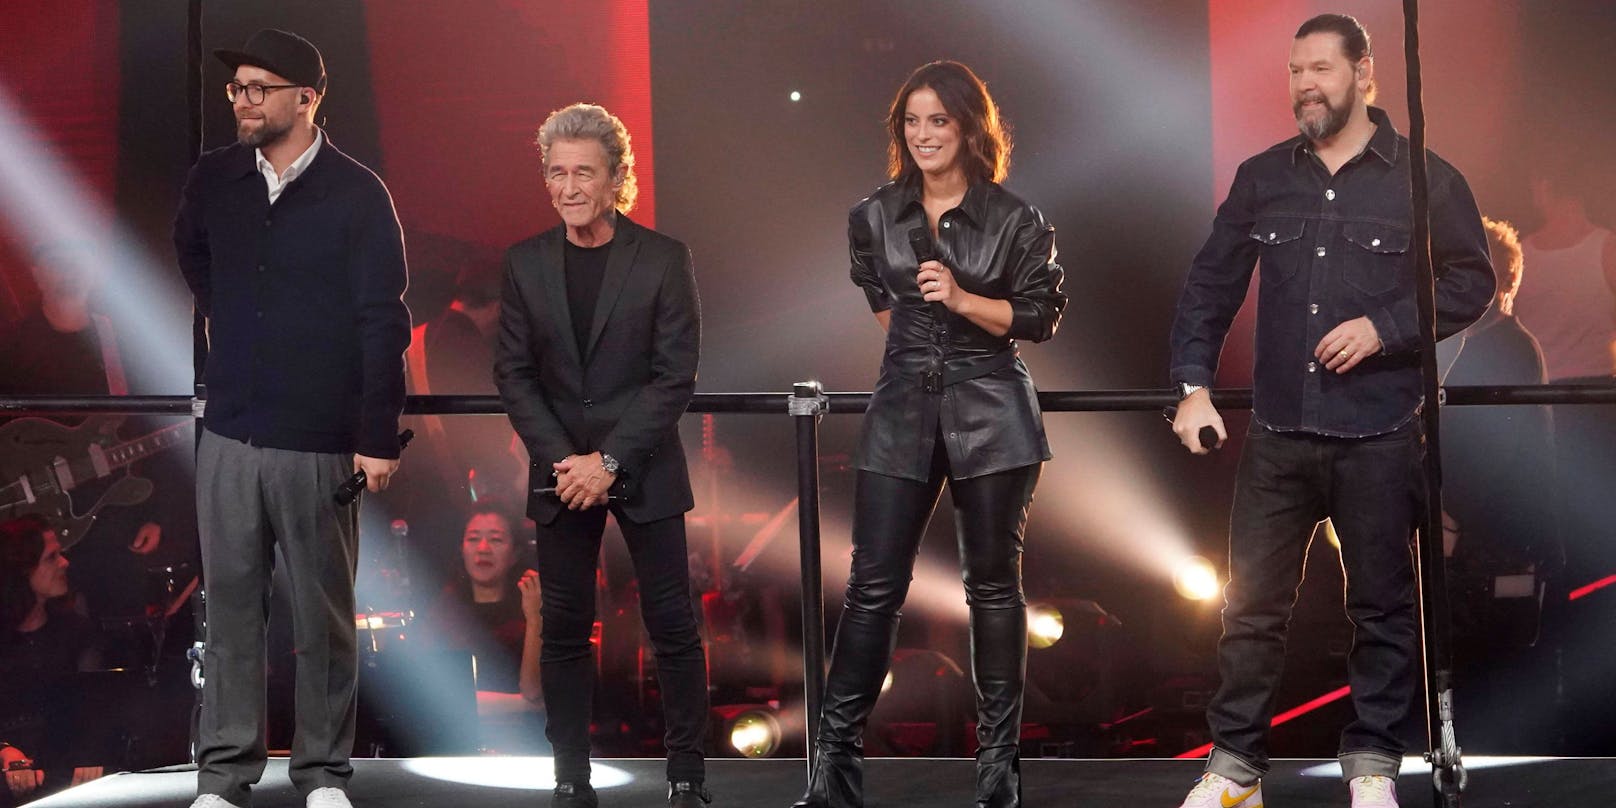  Mark Forster, Peter Maffay, Stefanie Kloß und Rea Garvey waren in der 12. Staffel in der Jury von "The Voice of Germany".